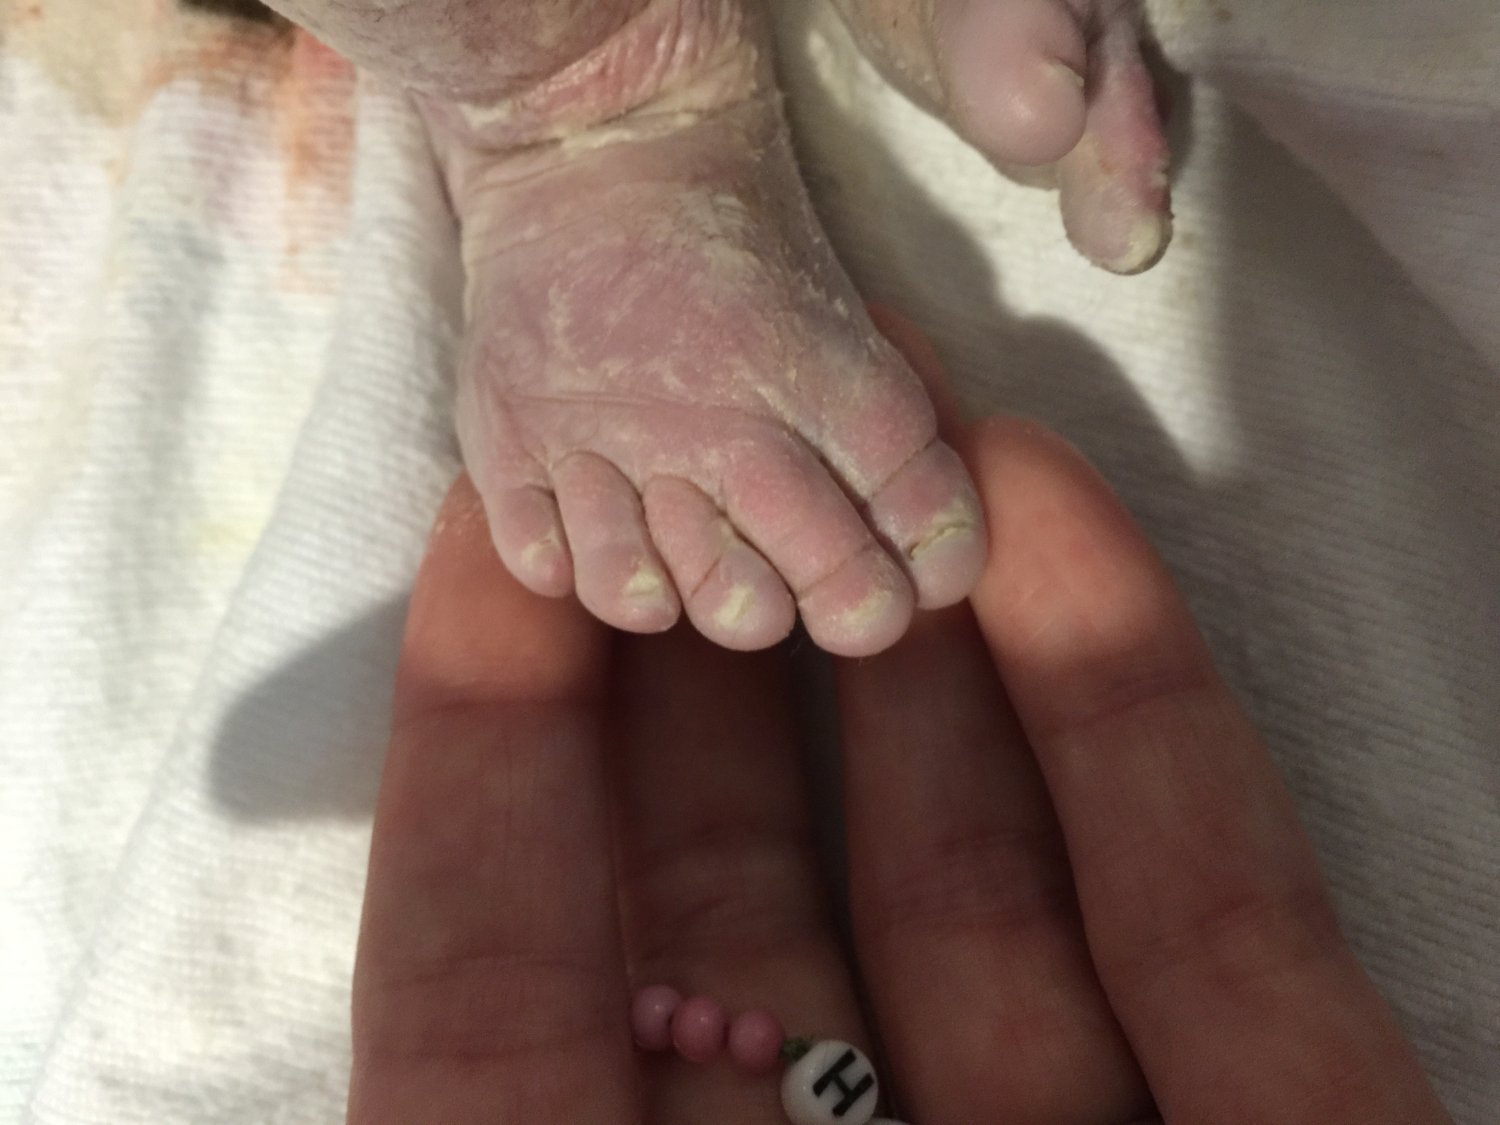 Foot of stillborn baby